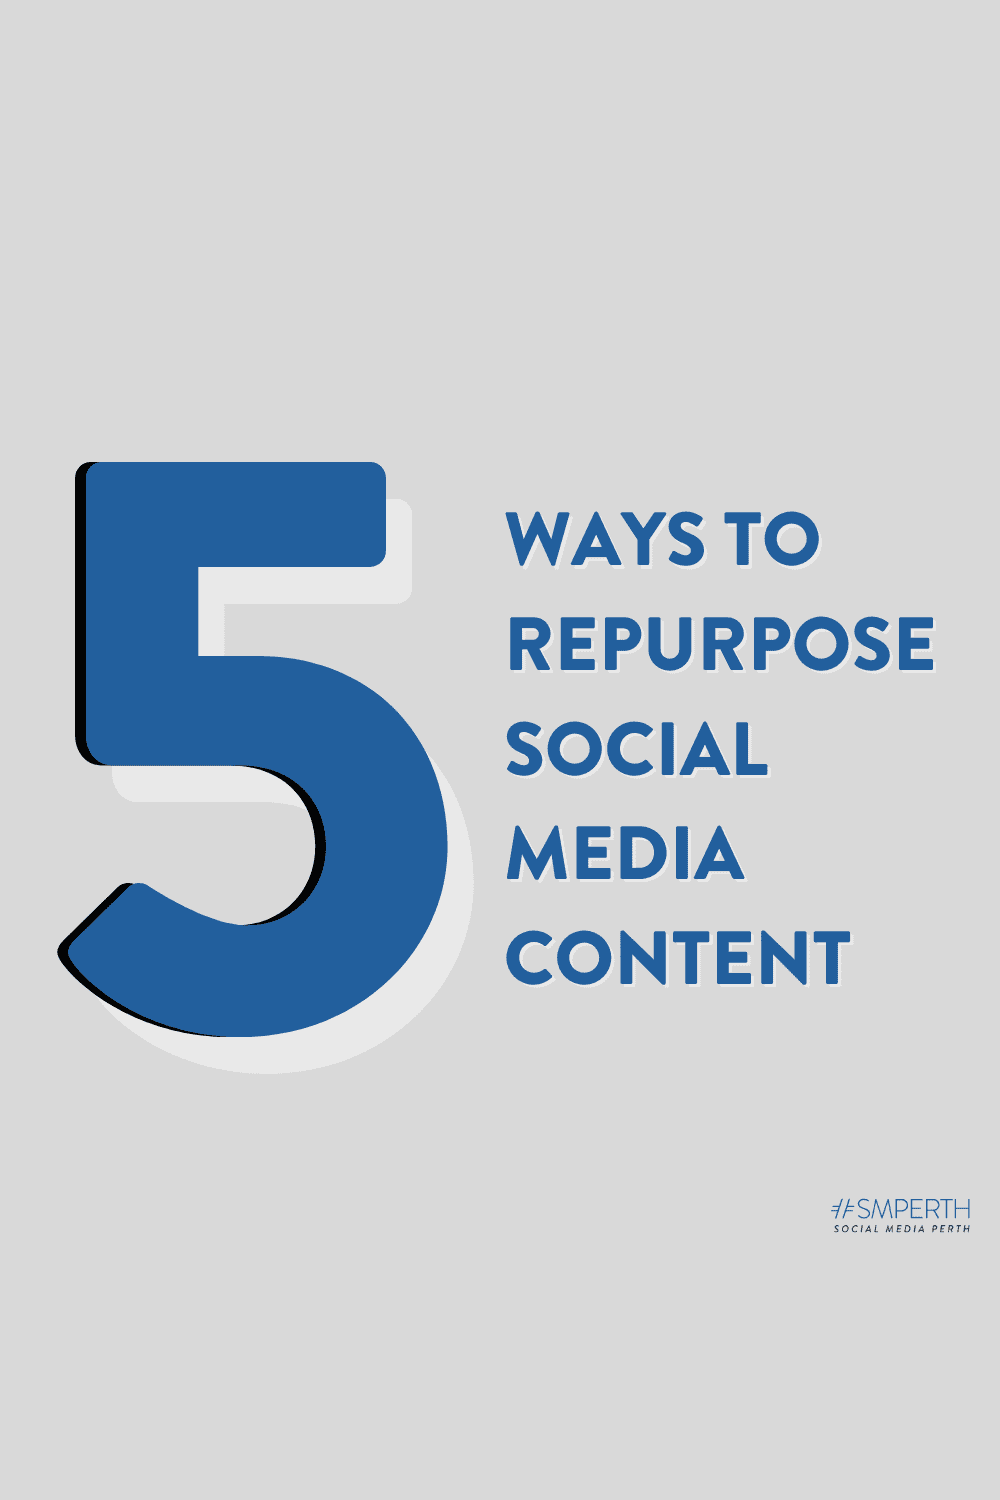 Repurposing Social Media Content in 5 Ways